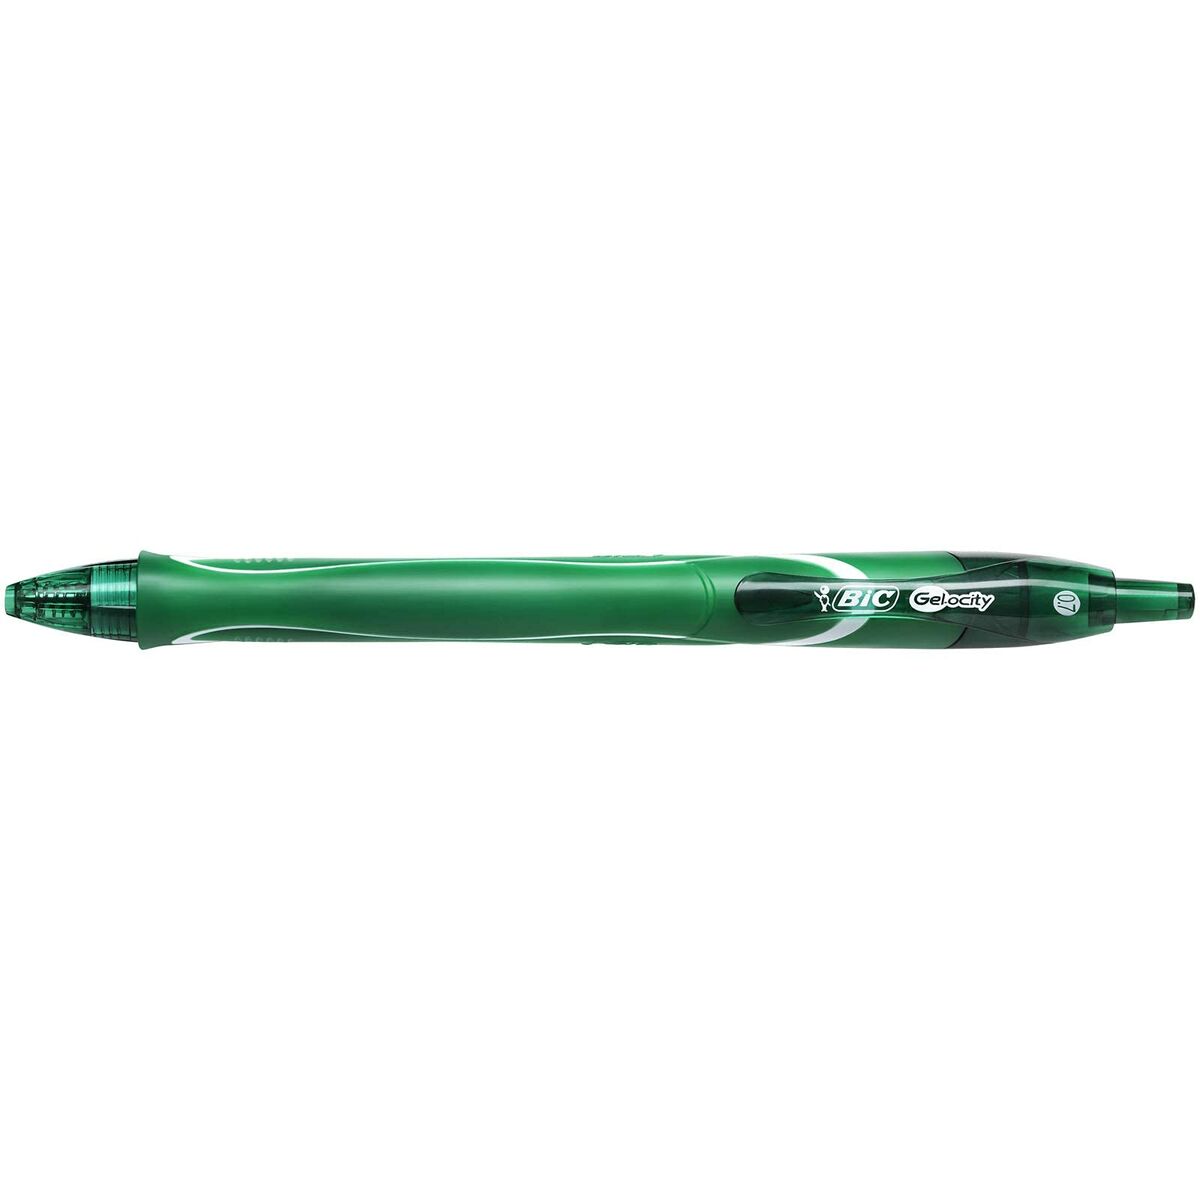 Gelpenna Bic Gel-Ocity Quick Dry Grön 0,3 mm (12 antal)-Kontor och Kontorsmaterial, Kulspetspennor, pennor och skrivverktyg-Bic-peaceofhome.se